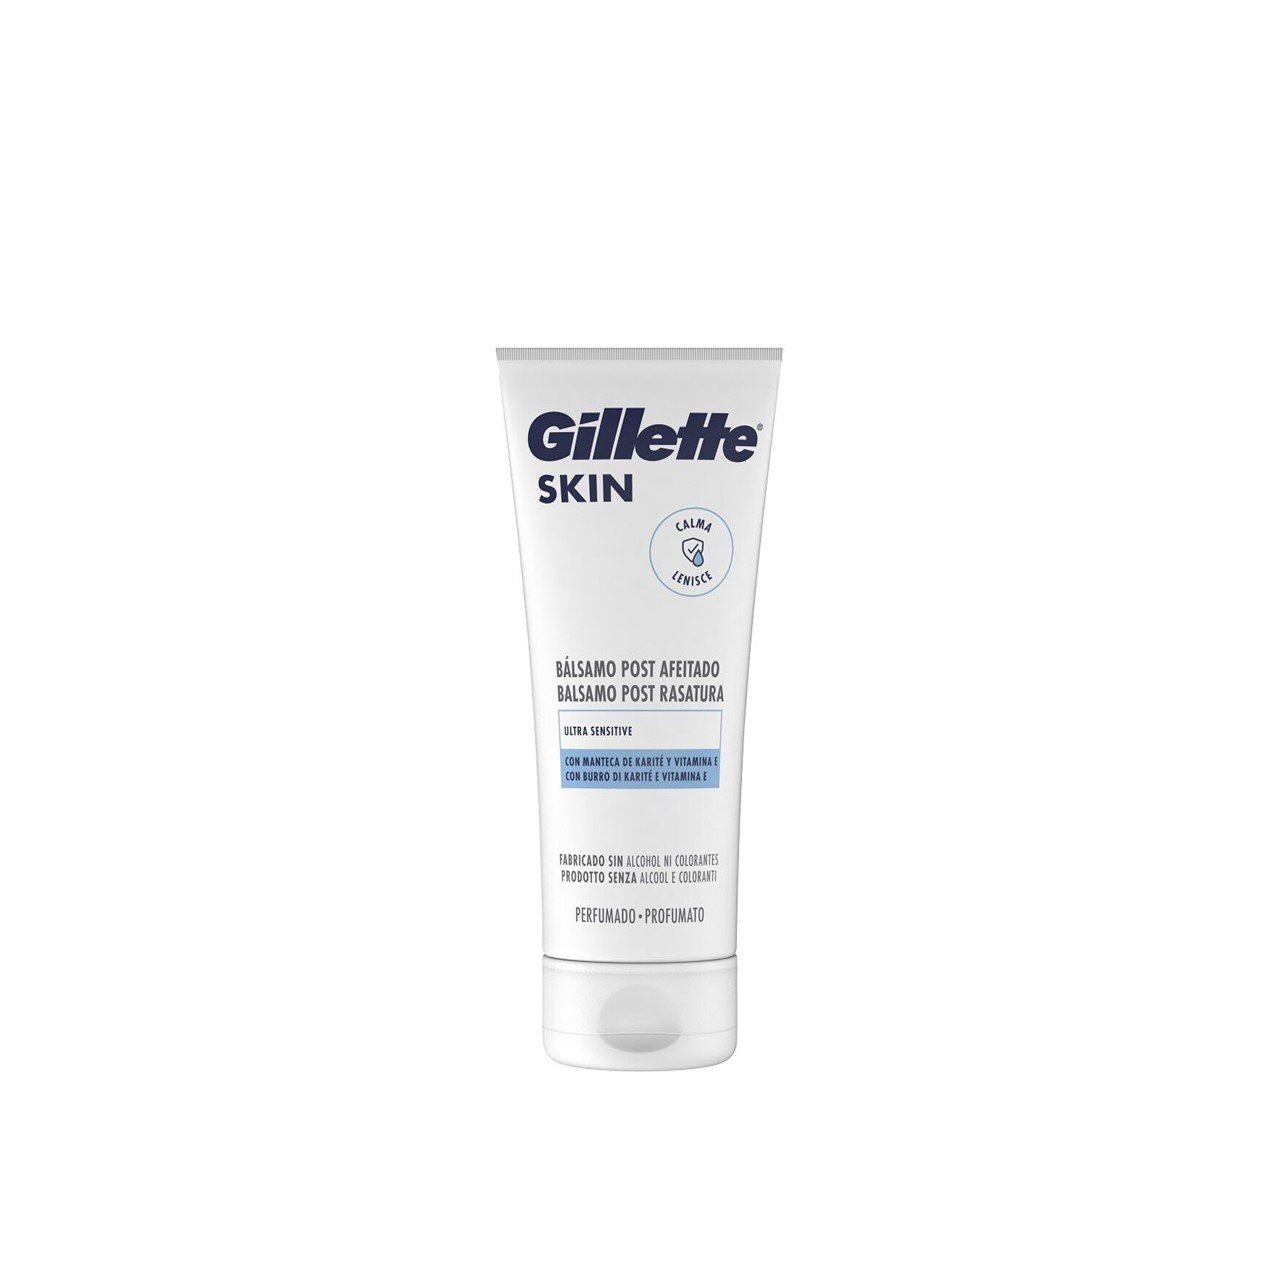 Gillette Skin Ultra Sensitive After Shave Balm 100ml (3.38fl oz)